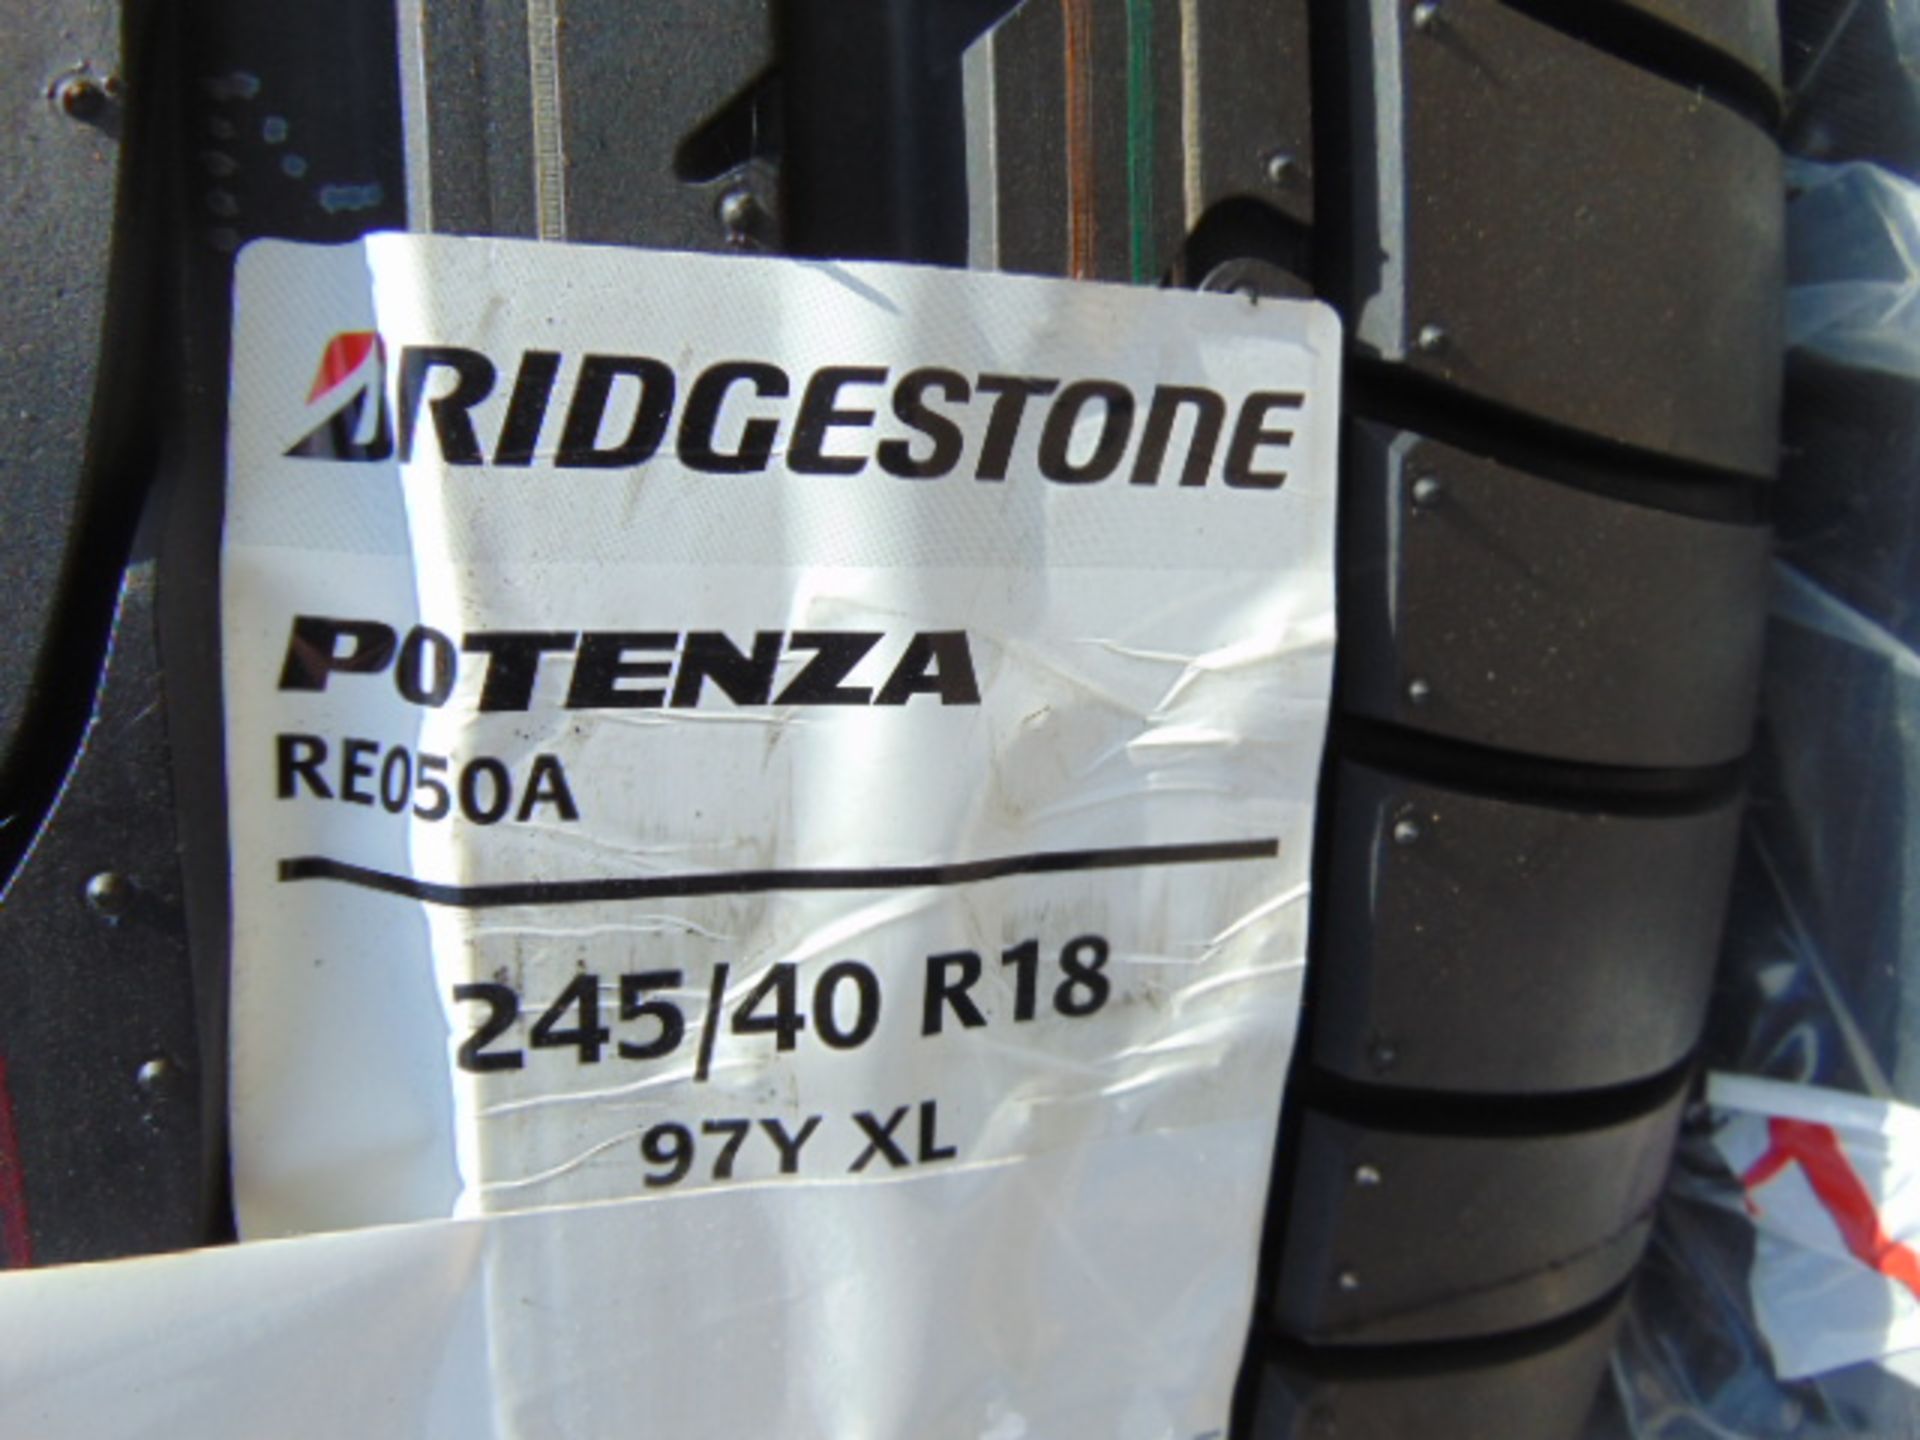 4 x Bridgestone Potenza 245/40 R18 97Y XL Tyres - Image 4 of 6